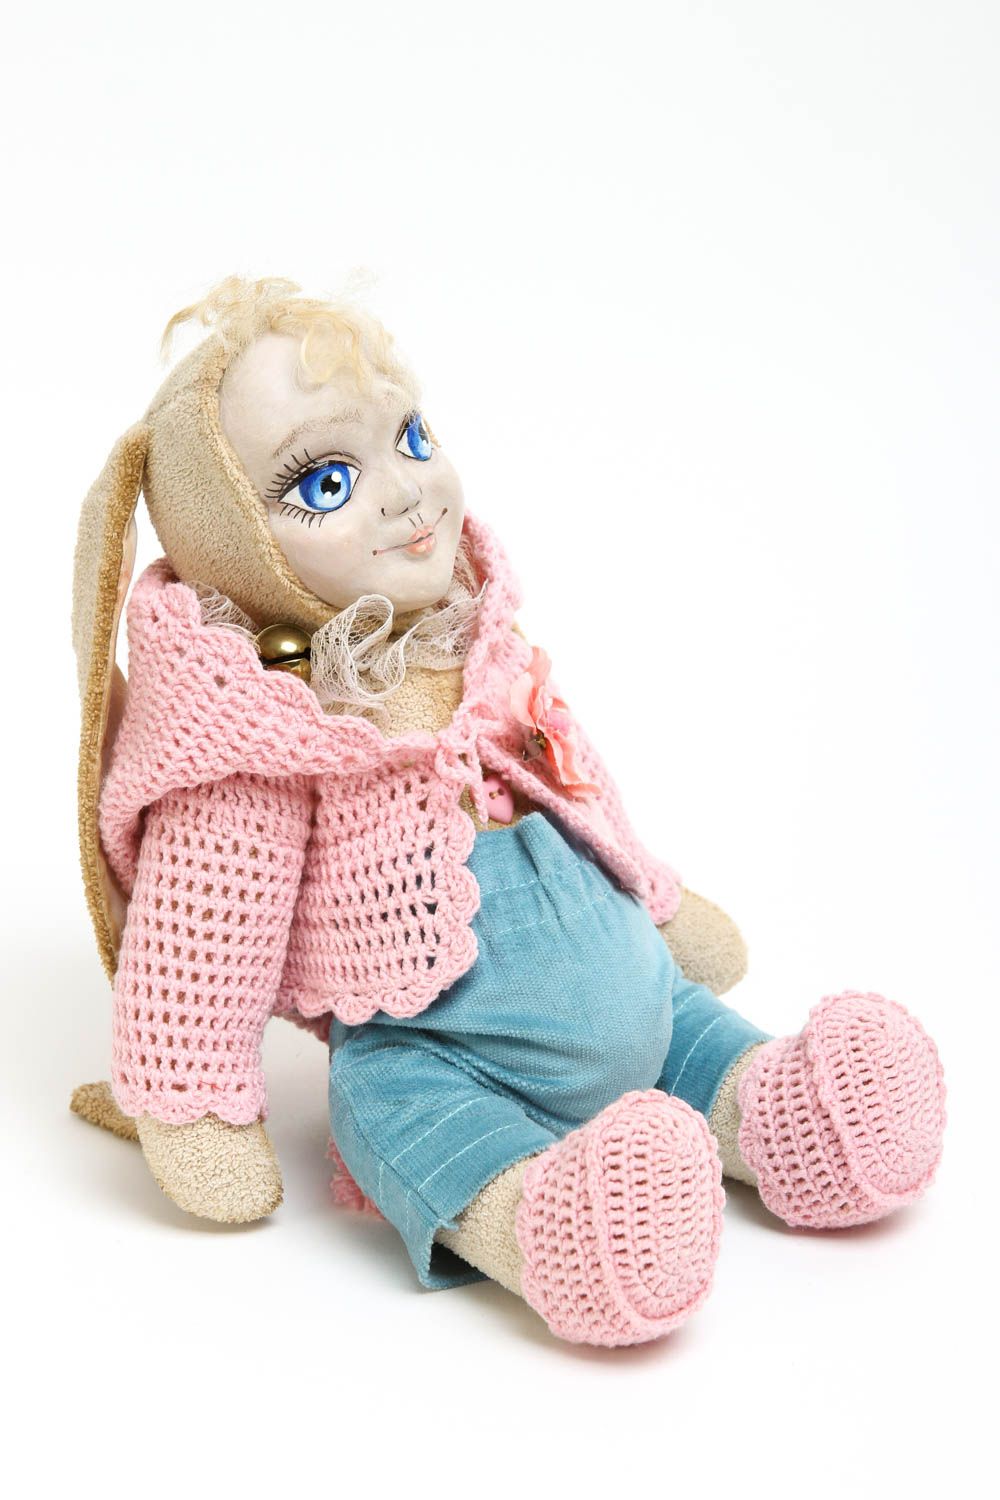 Кукла ручной работы кукла из ткани микровельвета авторская кукла с ушками фото 3